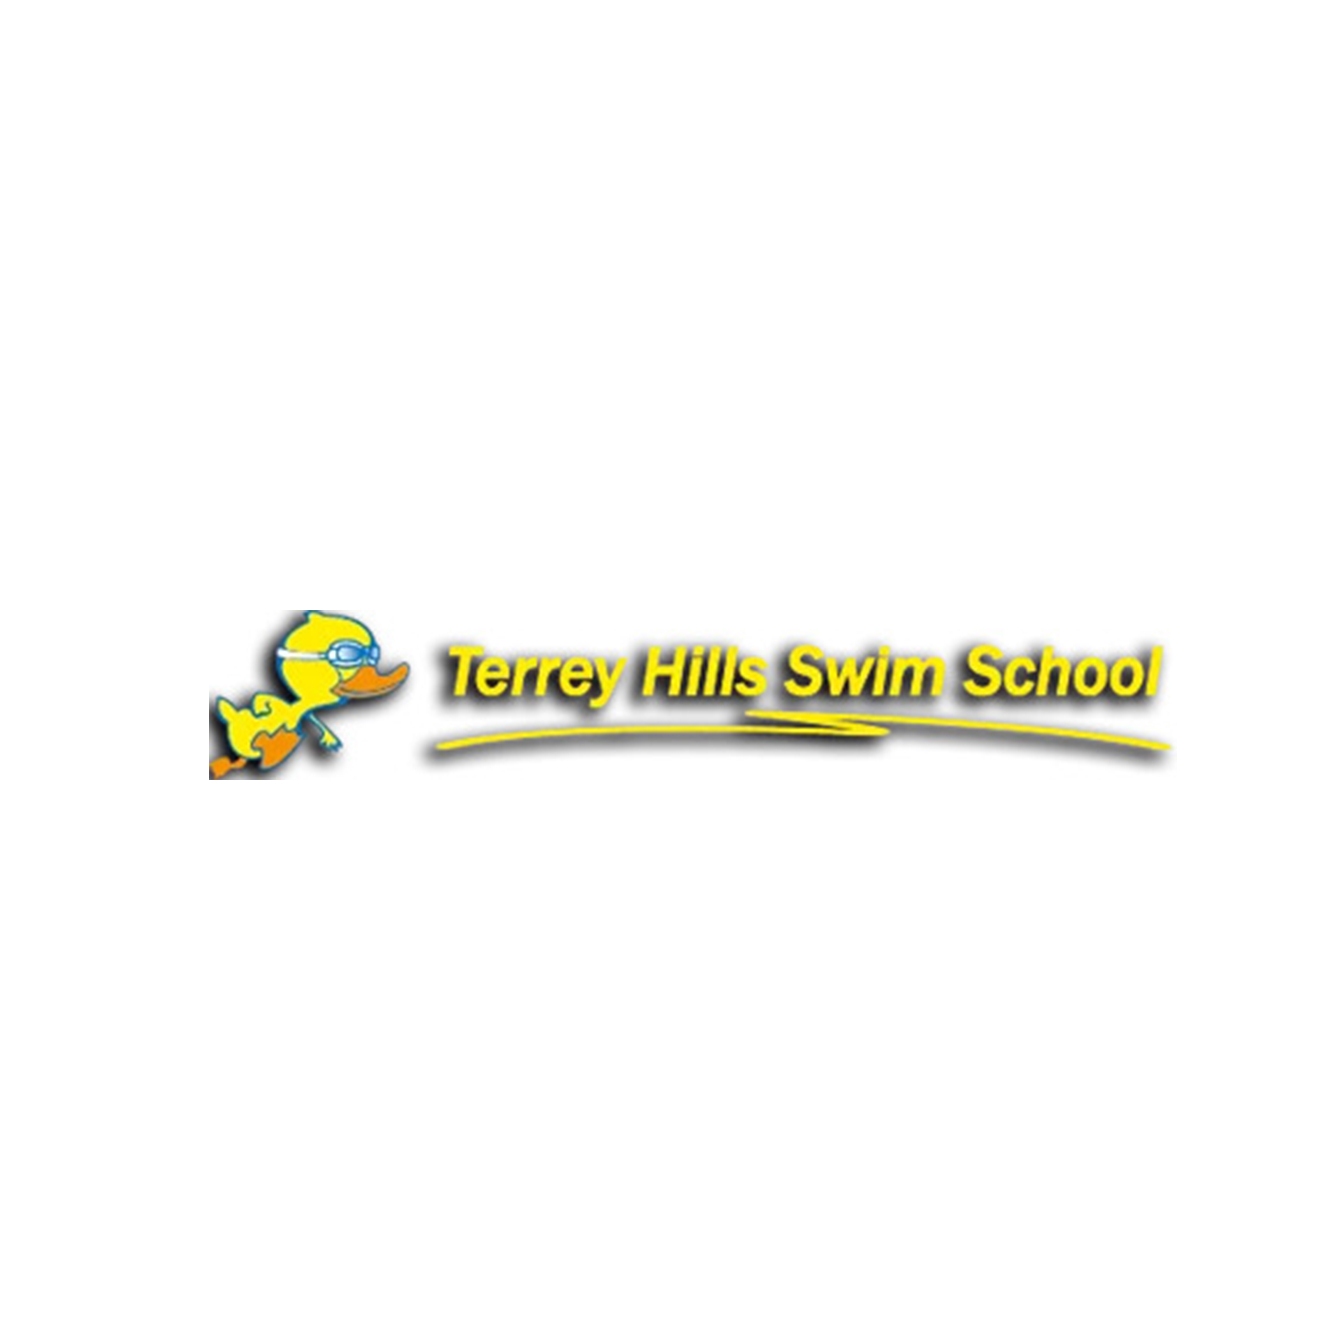  Terrey Hills Swim School in Terrey Hills NSW